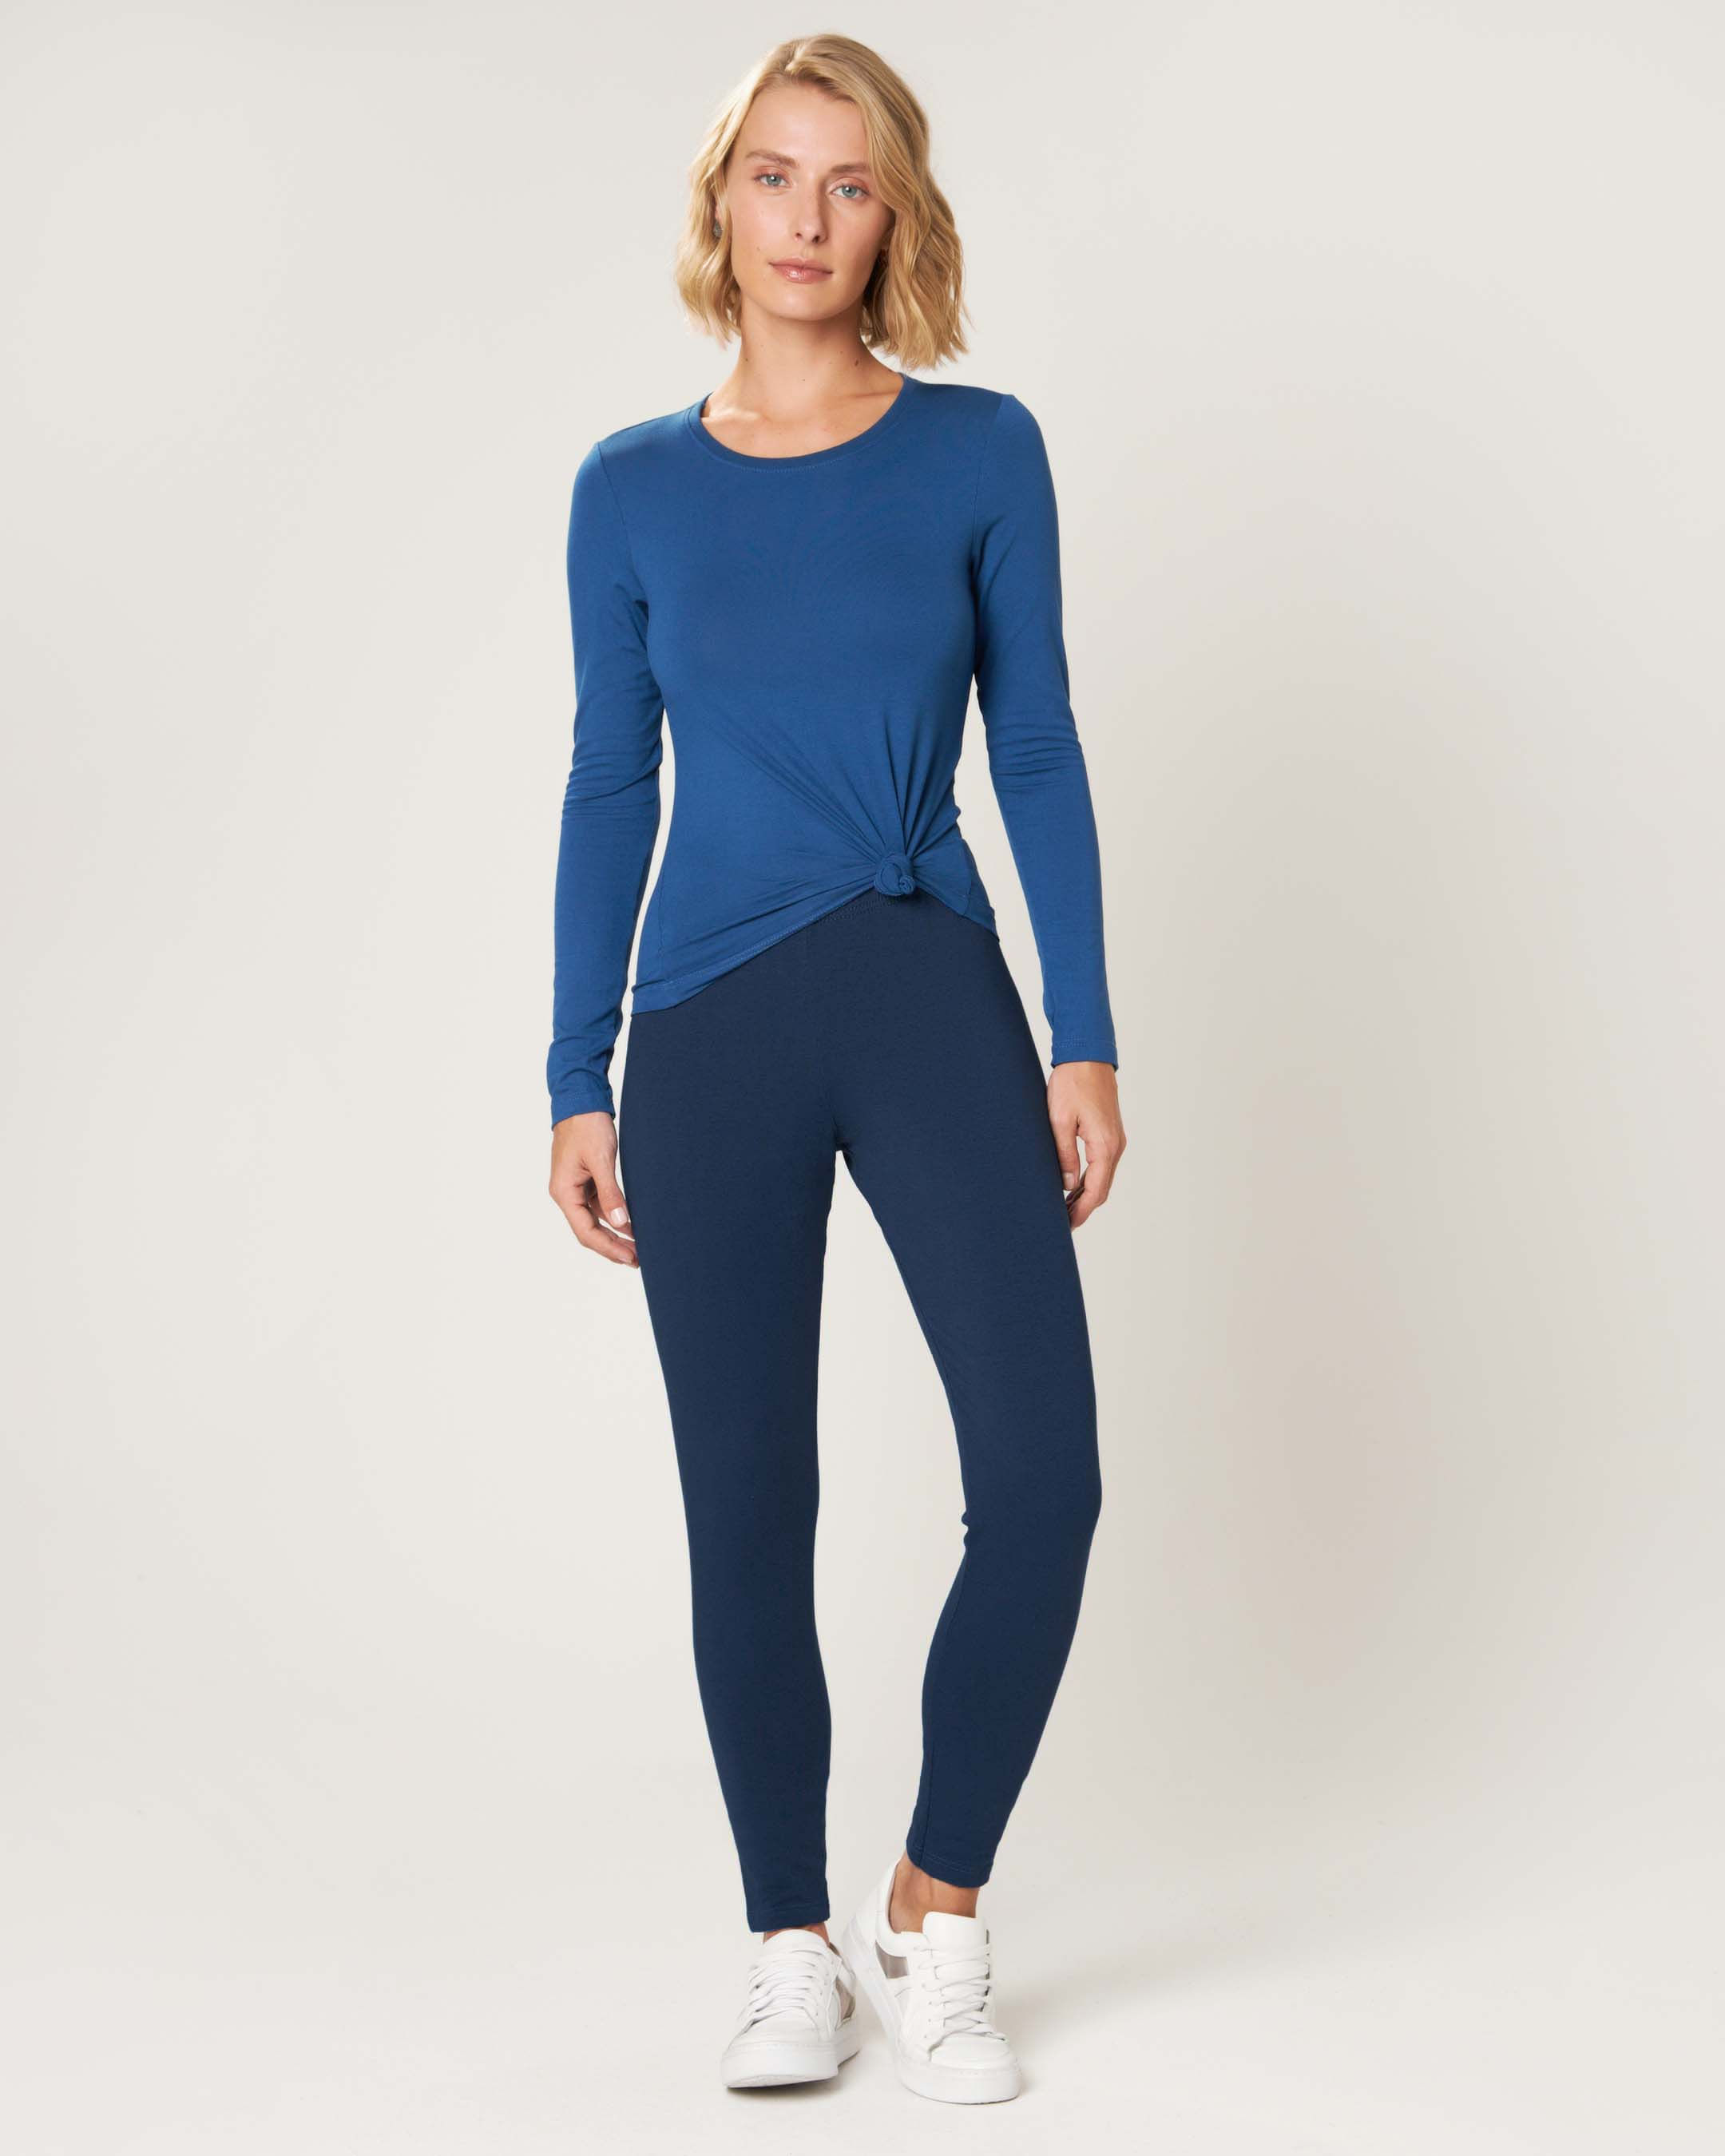 Calça legging esportiva feminina azul, BodyWork by Riachuelo